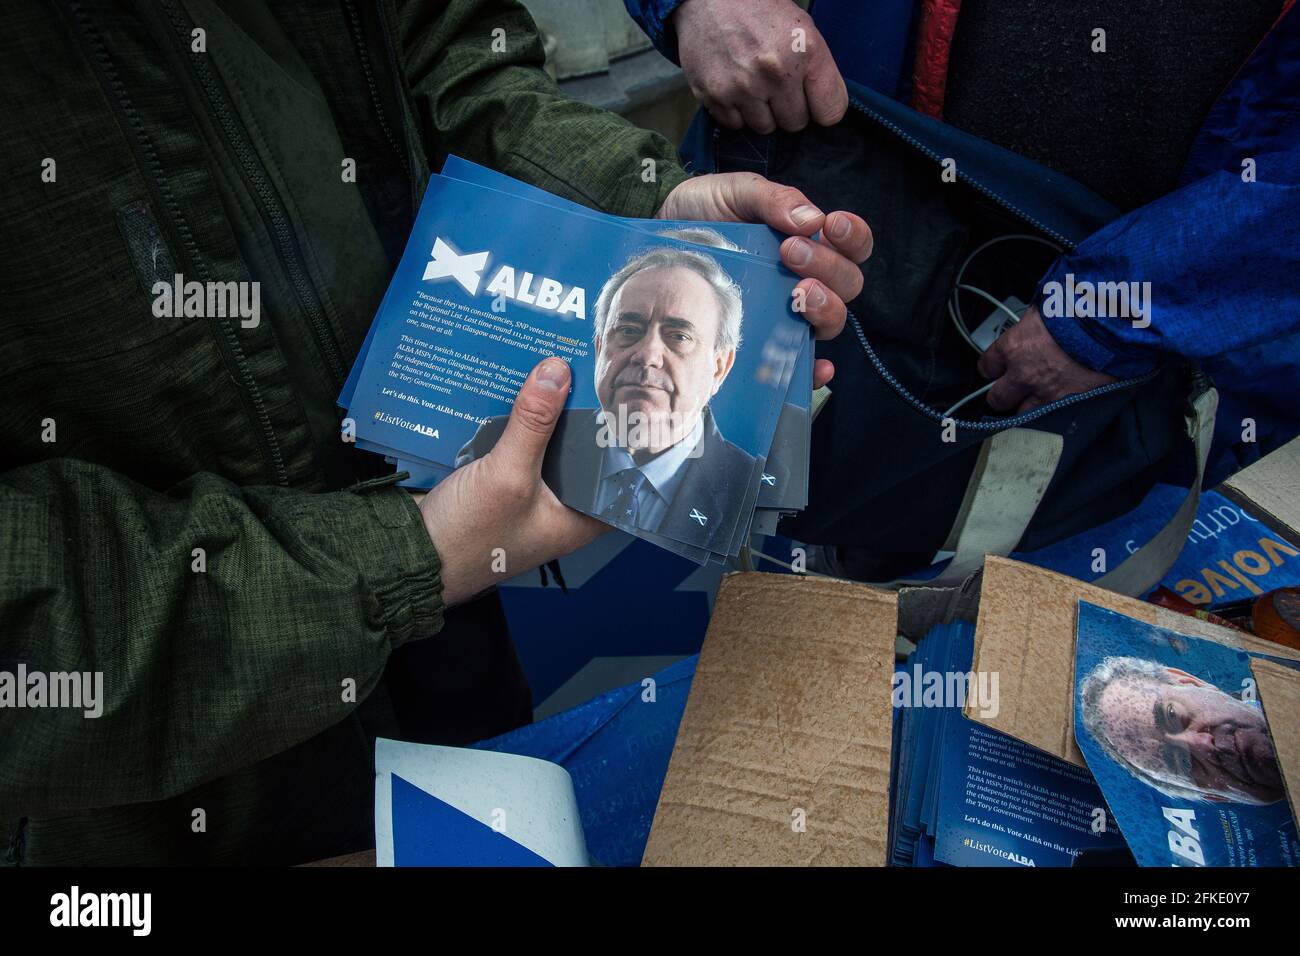 CAMPAÑA del partido ALBA en el Parque Kelvingrove con materiales de campaña recolectados por voluntarios en Glasgow, Escocia. Foto de stock